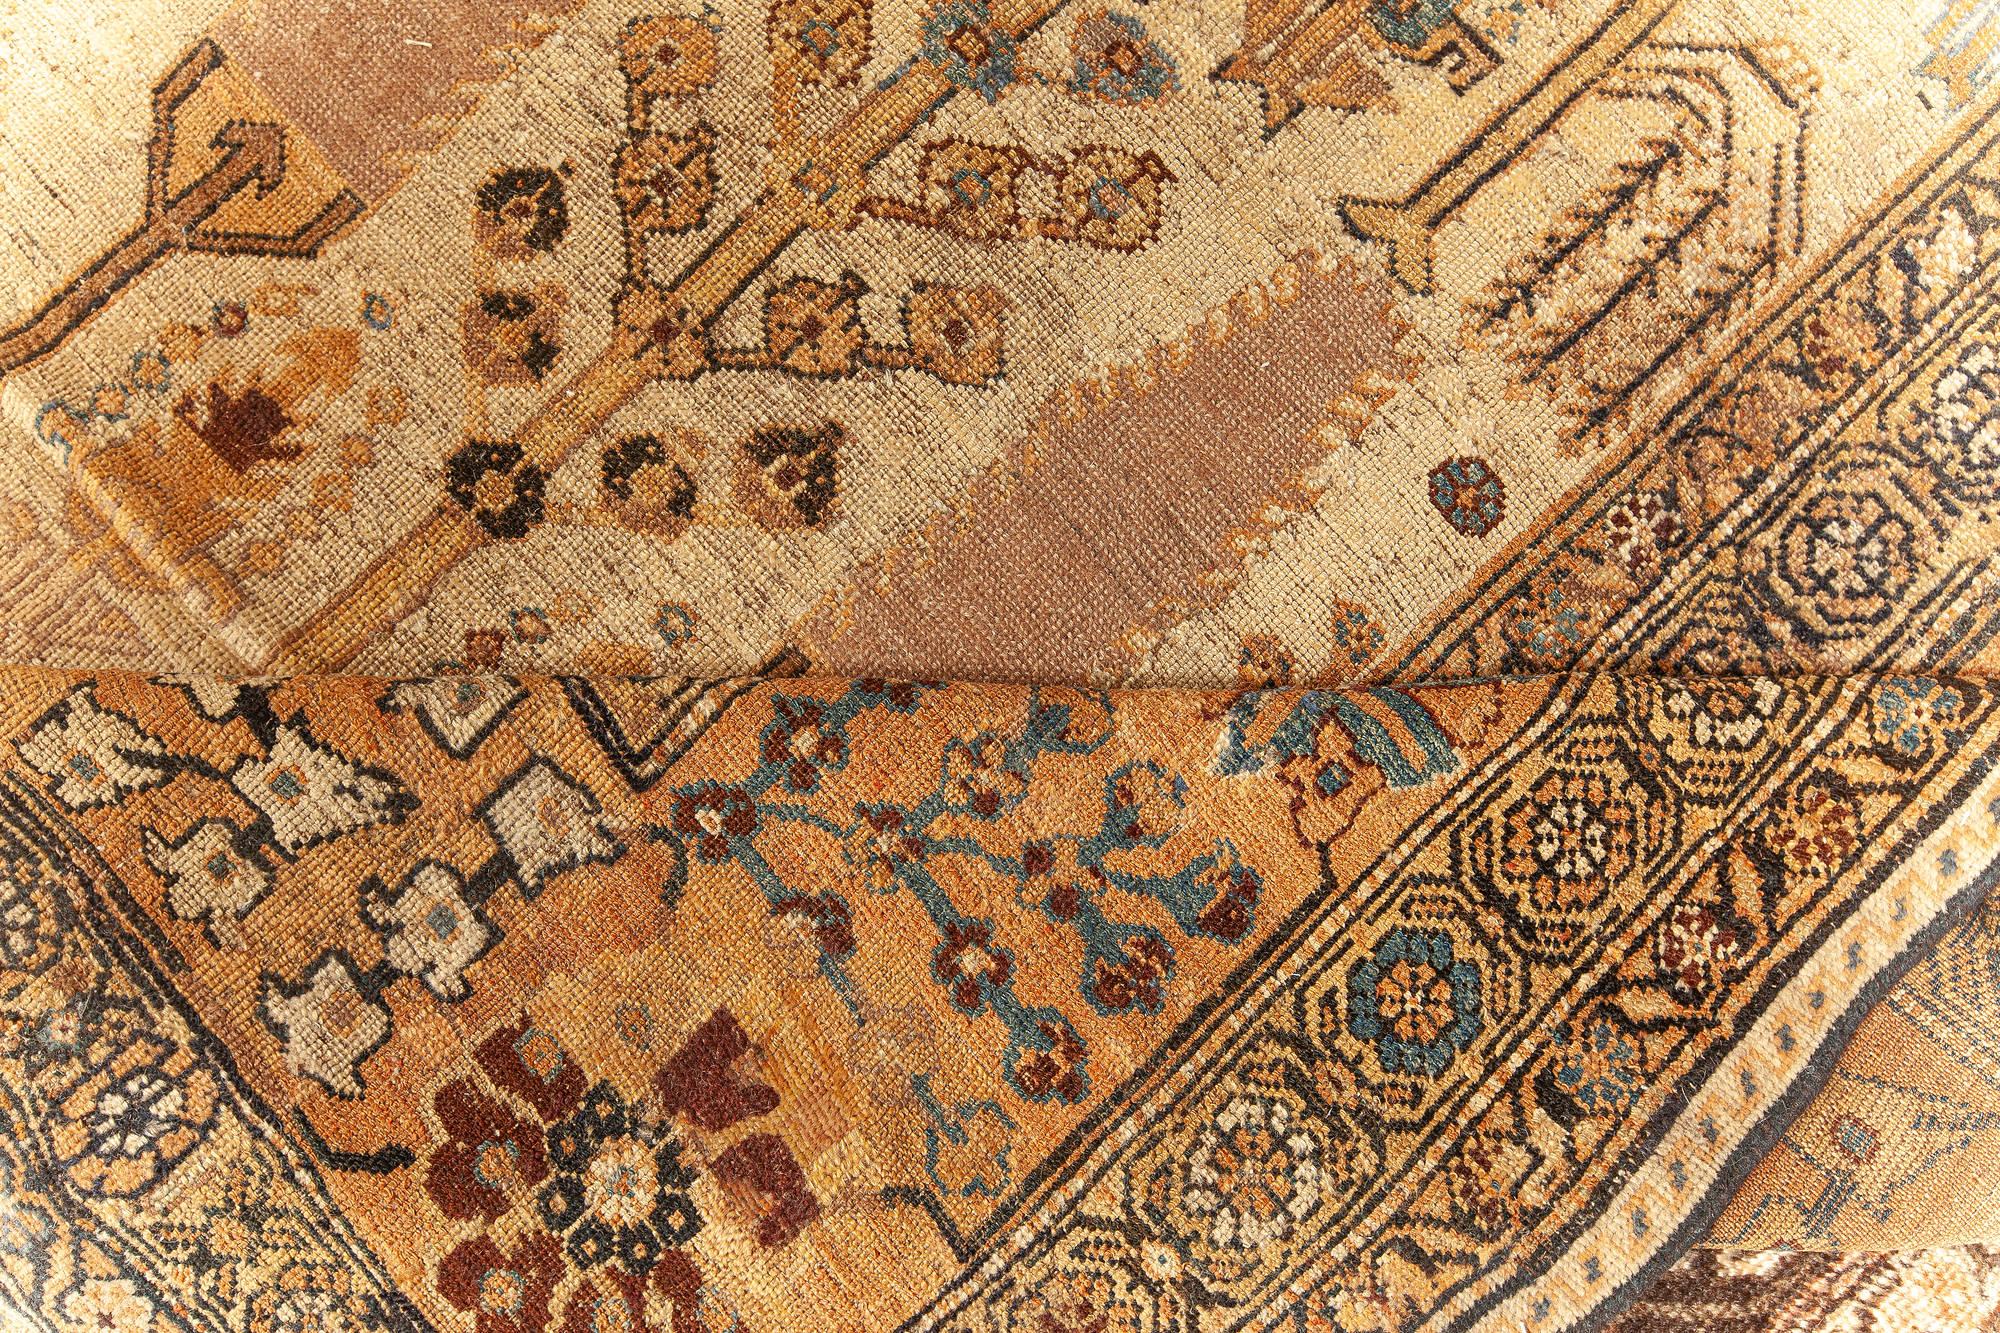 Authentique tapis persan Bakhtiari en laine fait main
Taille : 14'6